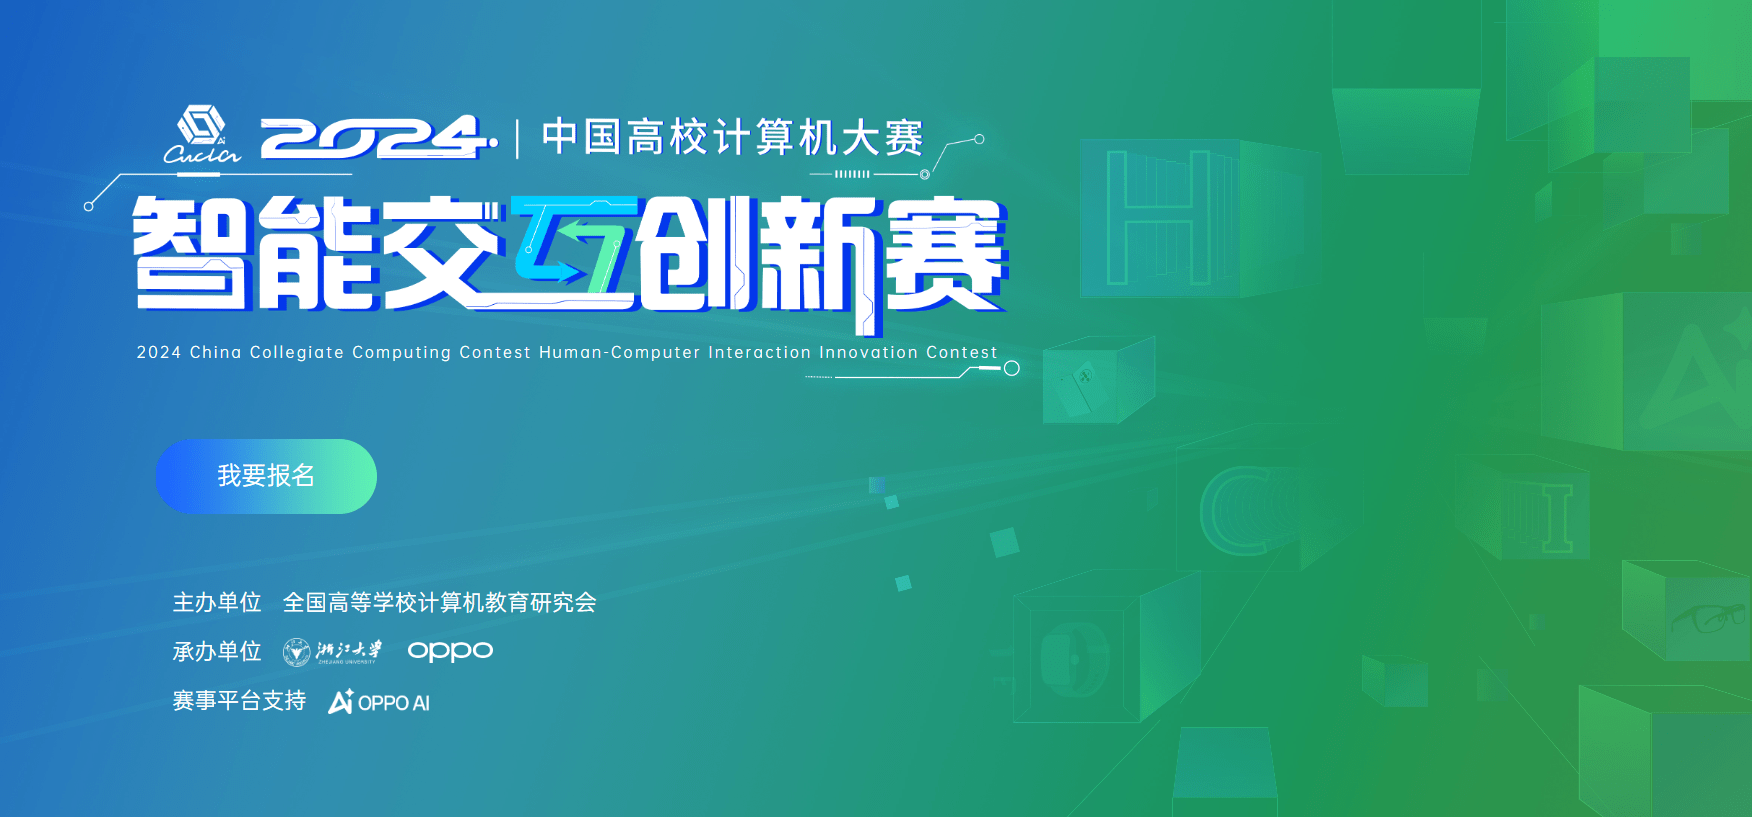 2024中国高校计算机大赛—智能交互创新赛